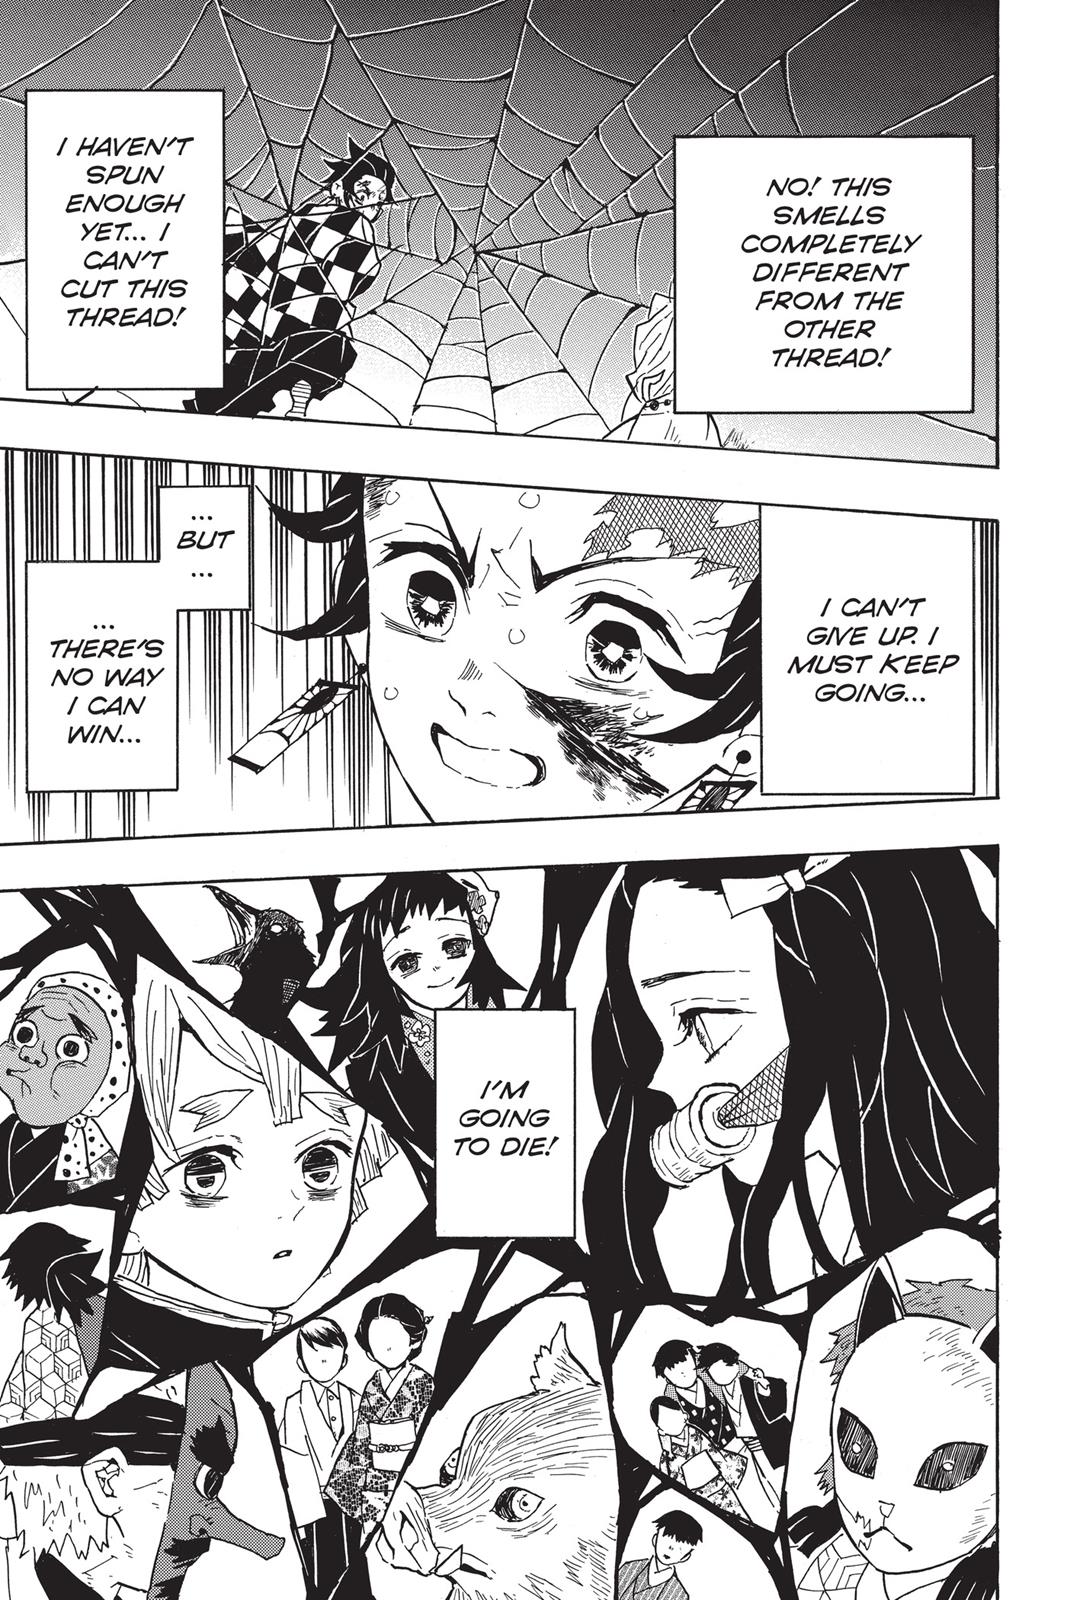 Demon Slayer Manga Manga Chapter - 39 - image 10